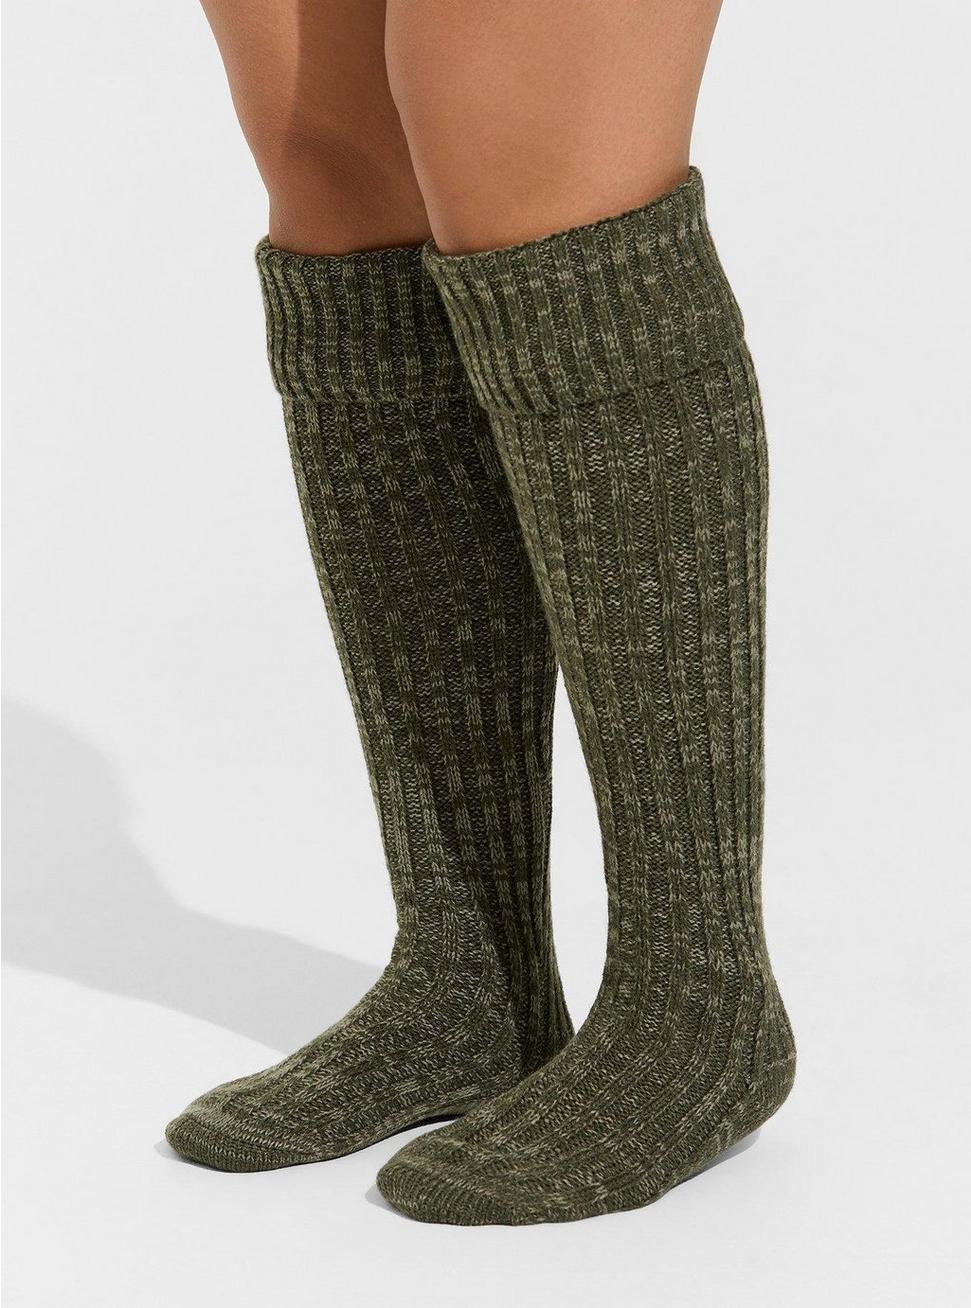 andrew augusta recommends Torrid Knee High Socks